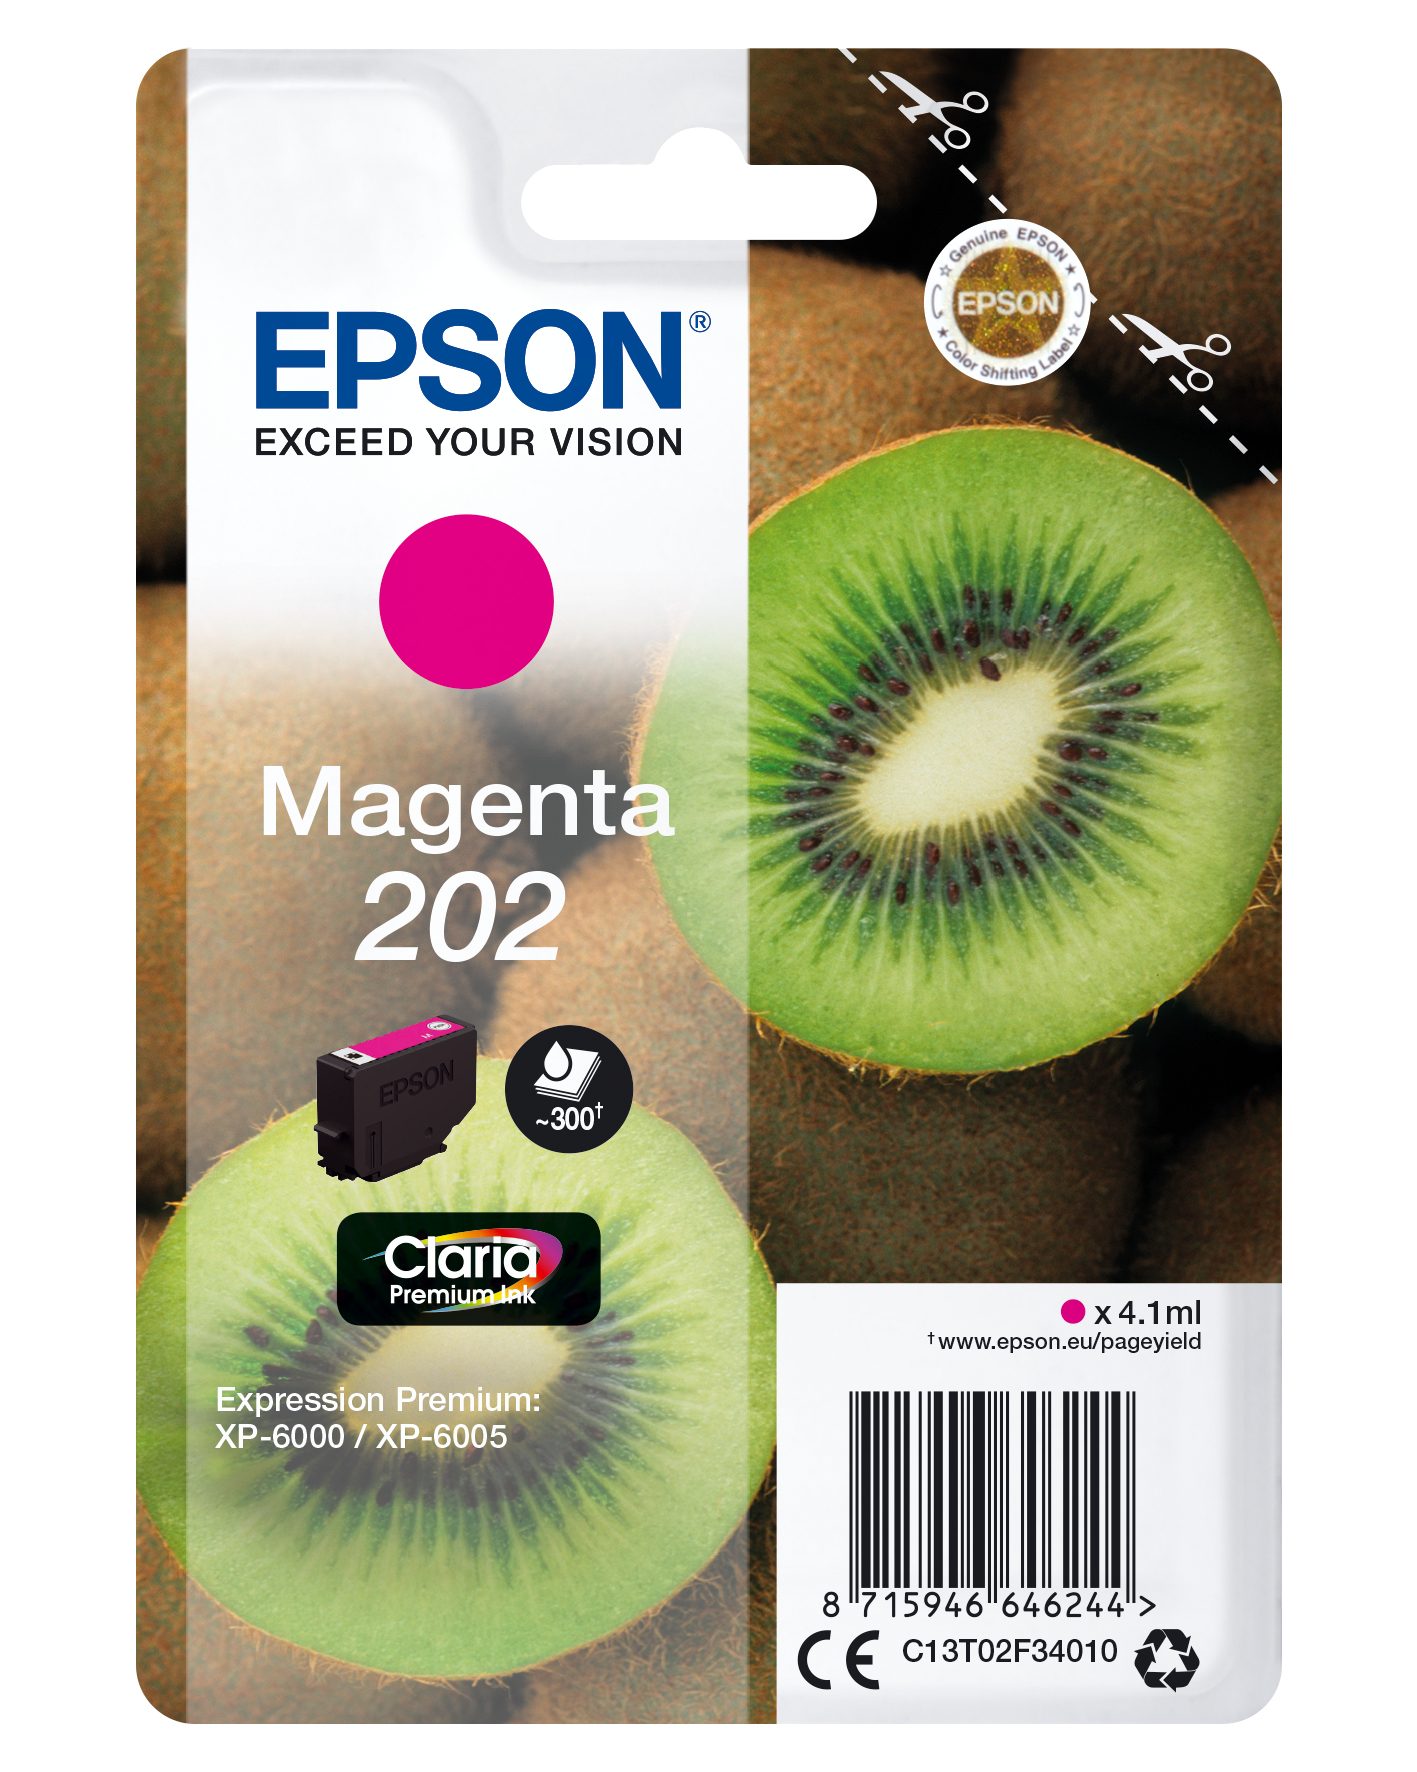 Epson 202 Kiwi Magenta